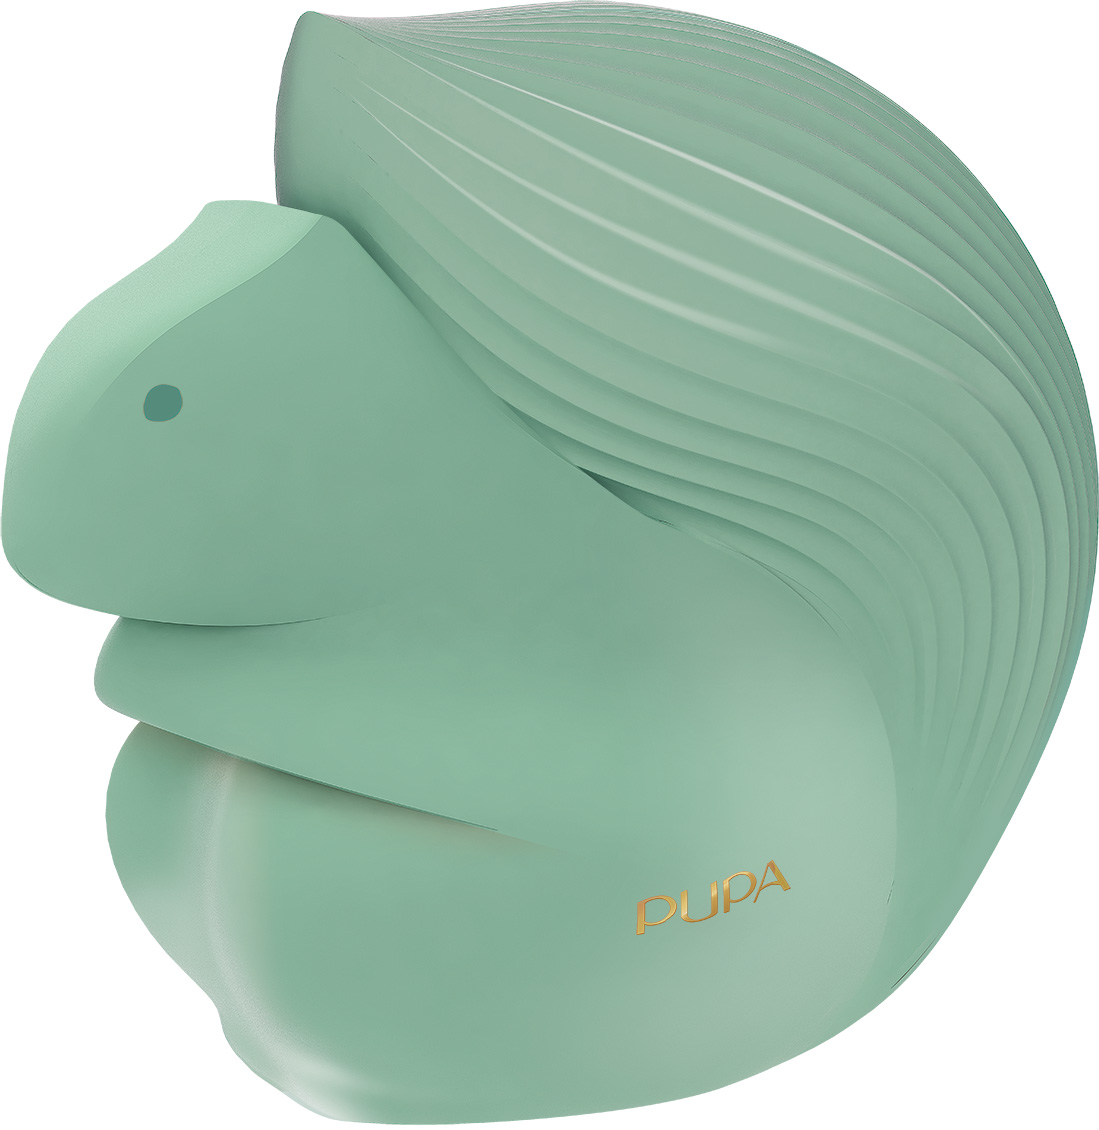 Акция на Шкатулка для макияжа Pupa Squirrel 3 №002 Green 20.8 г (8011607339617) от Rozetka UA